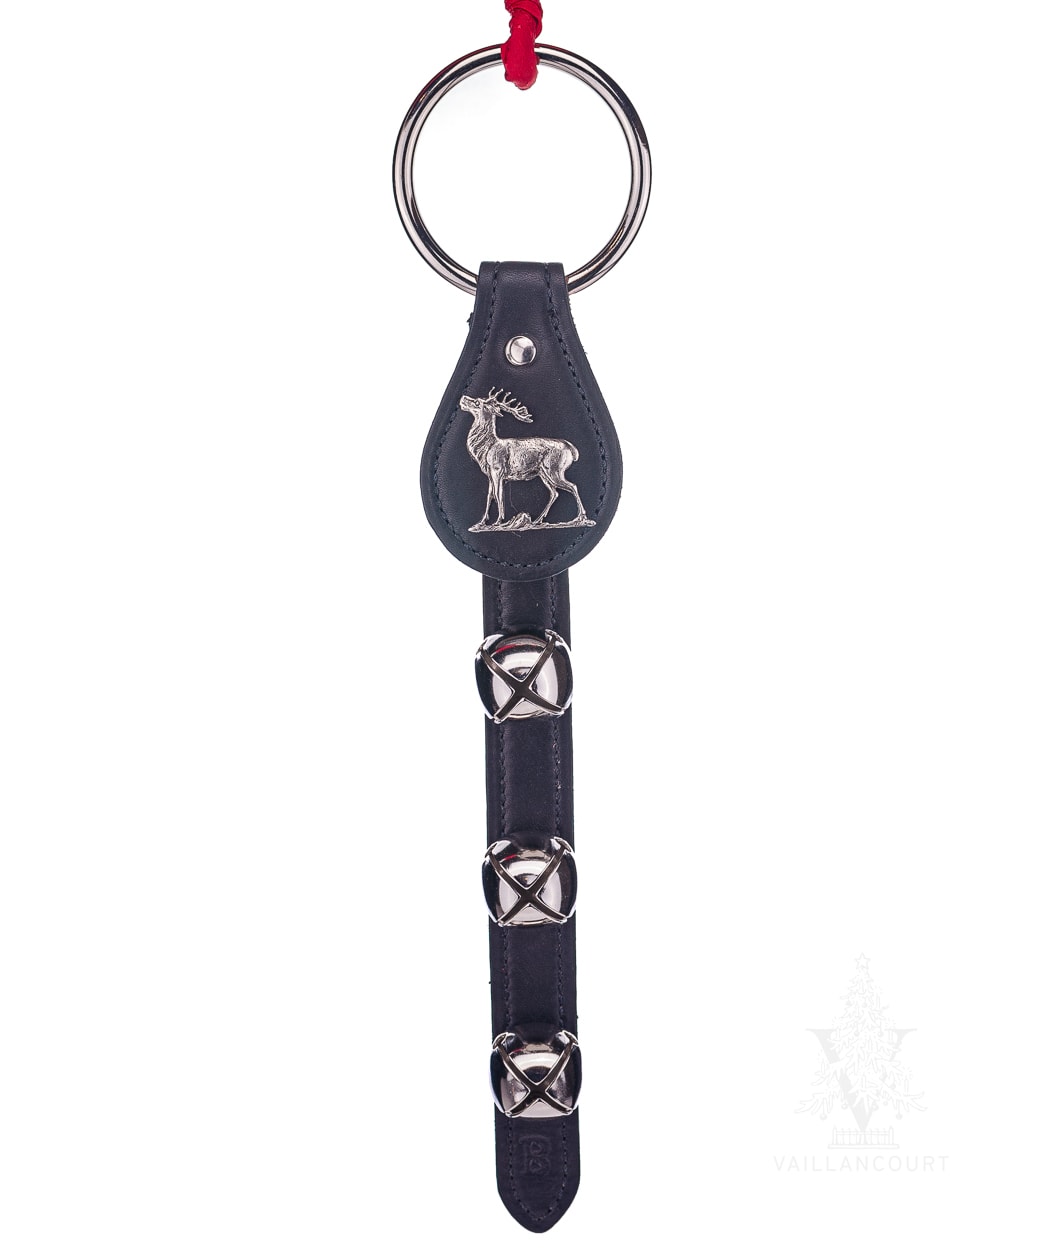 Belsnickel Bells' 3-Bell Black Leather Strap with Deer/Elk Charm